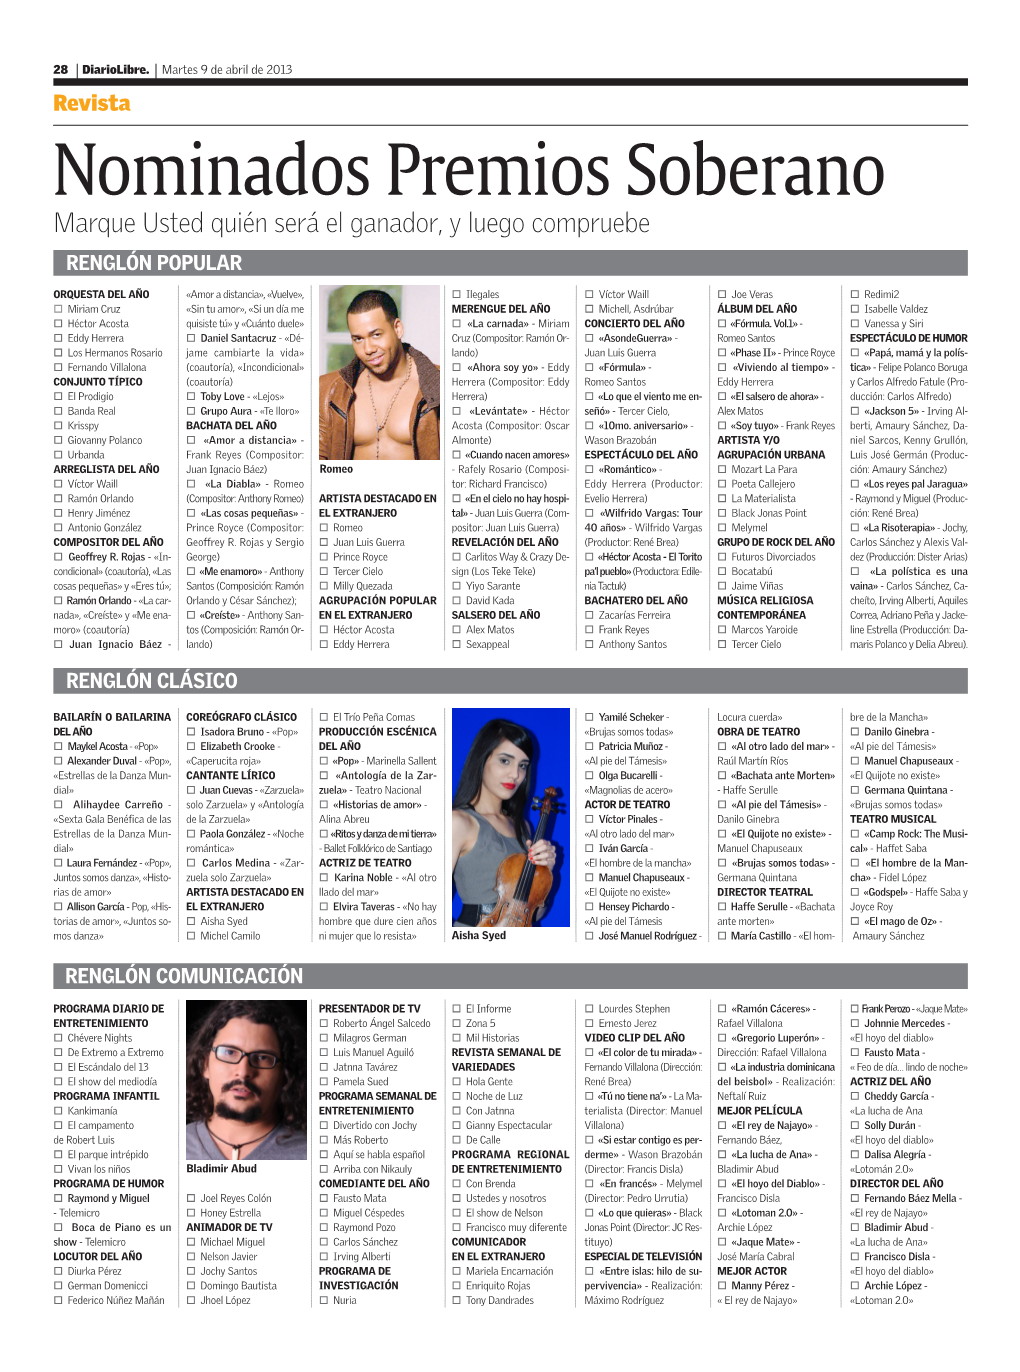 Nominados Premios Soberano Marque Usted Quién Será El Ganador, Y Luego Compruebe RENGLÓN POPULAR